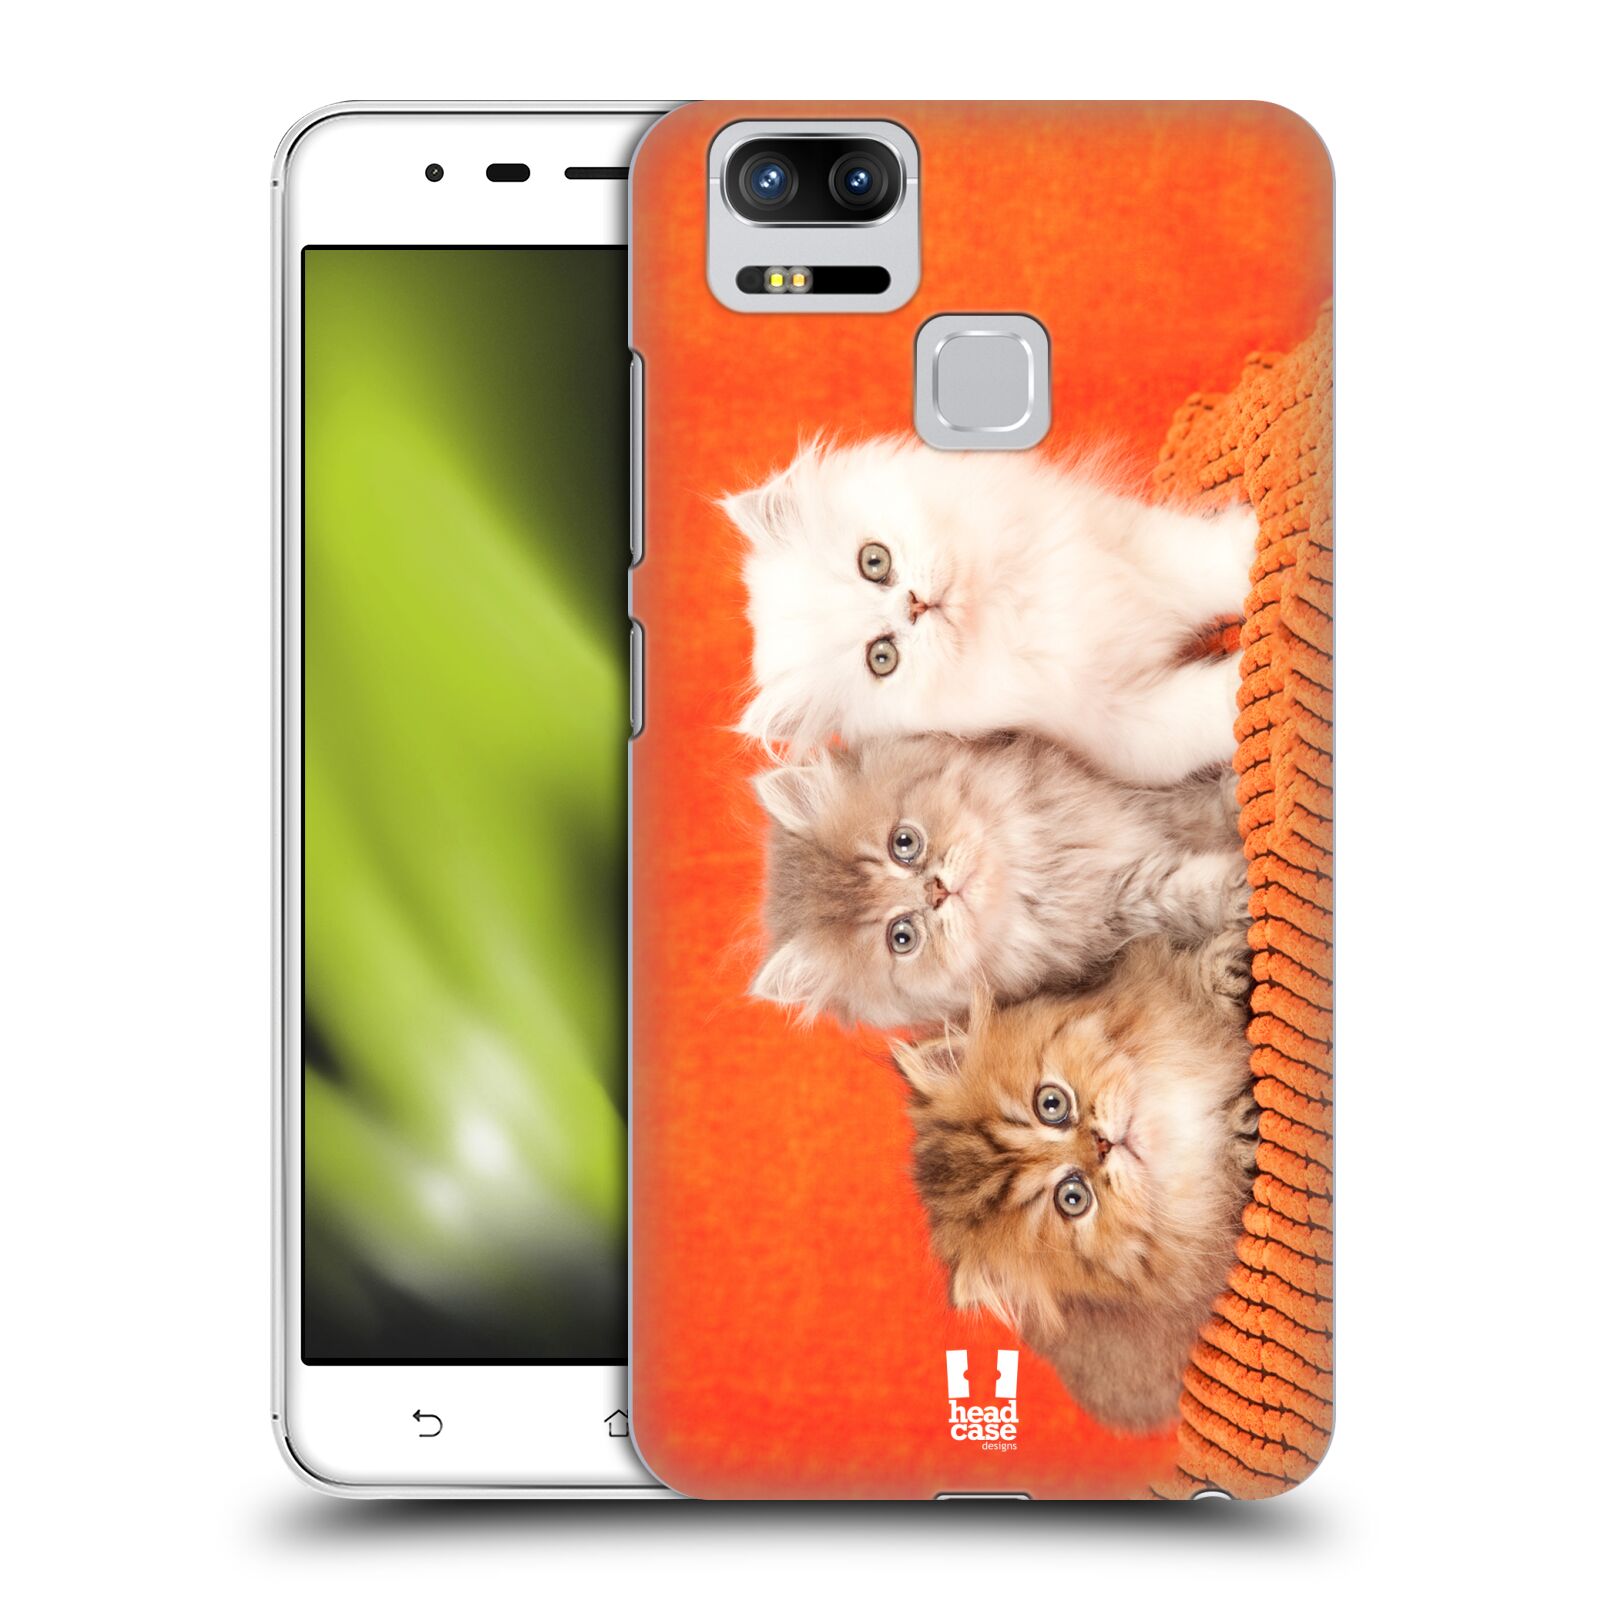 HEAD CASE plastový obal na mobil Asus Zenfone 3 Zoom ZE553KL vzor Kočičky koťata foto 3 kočky